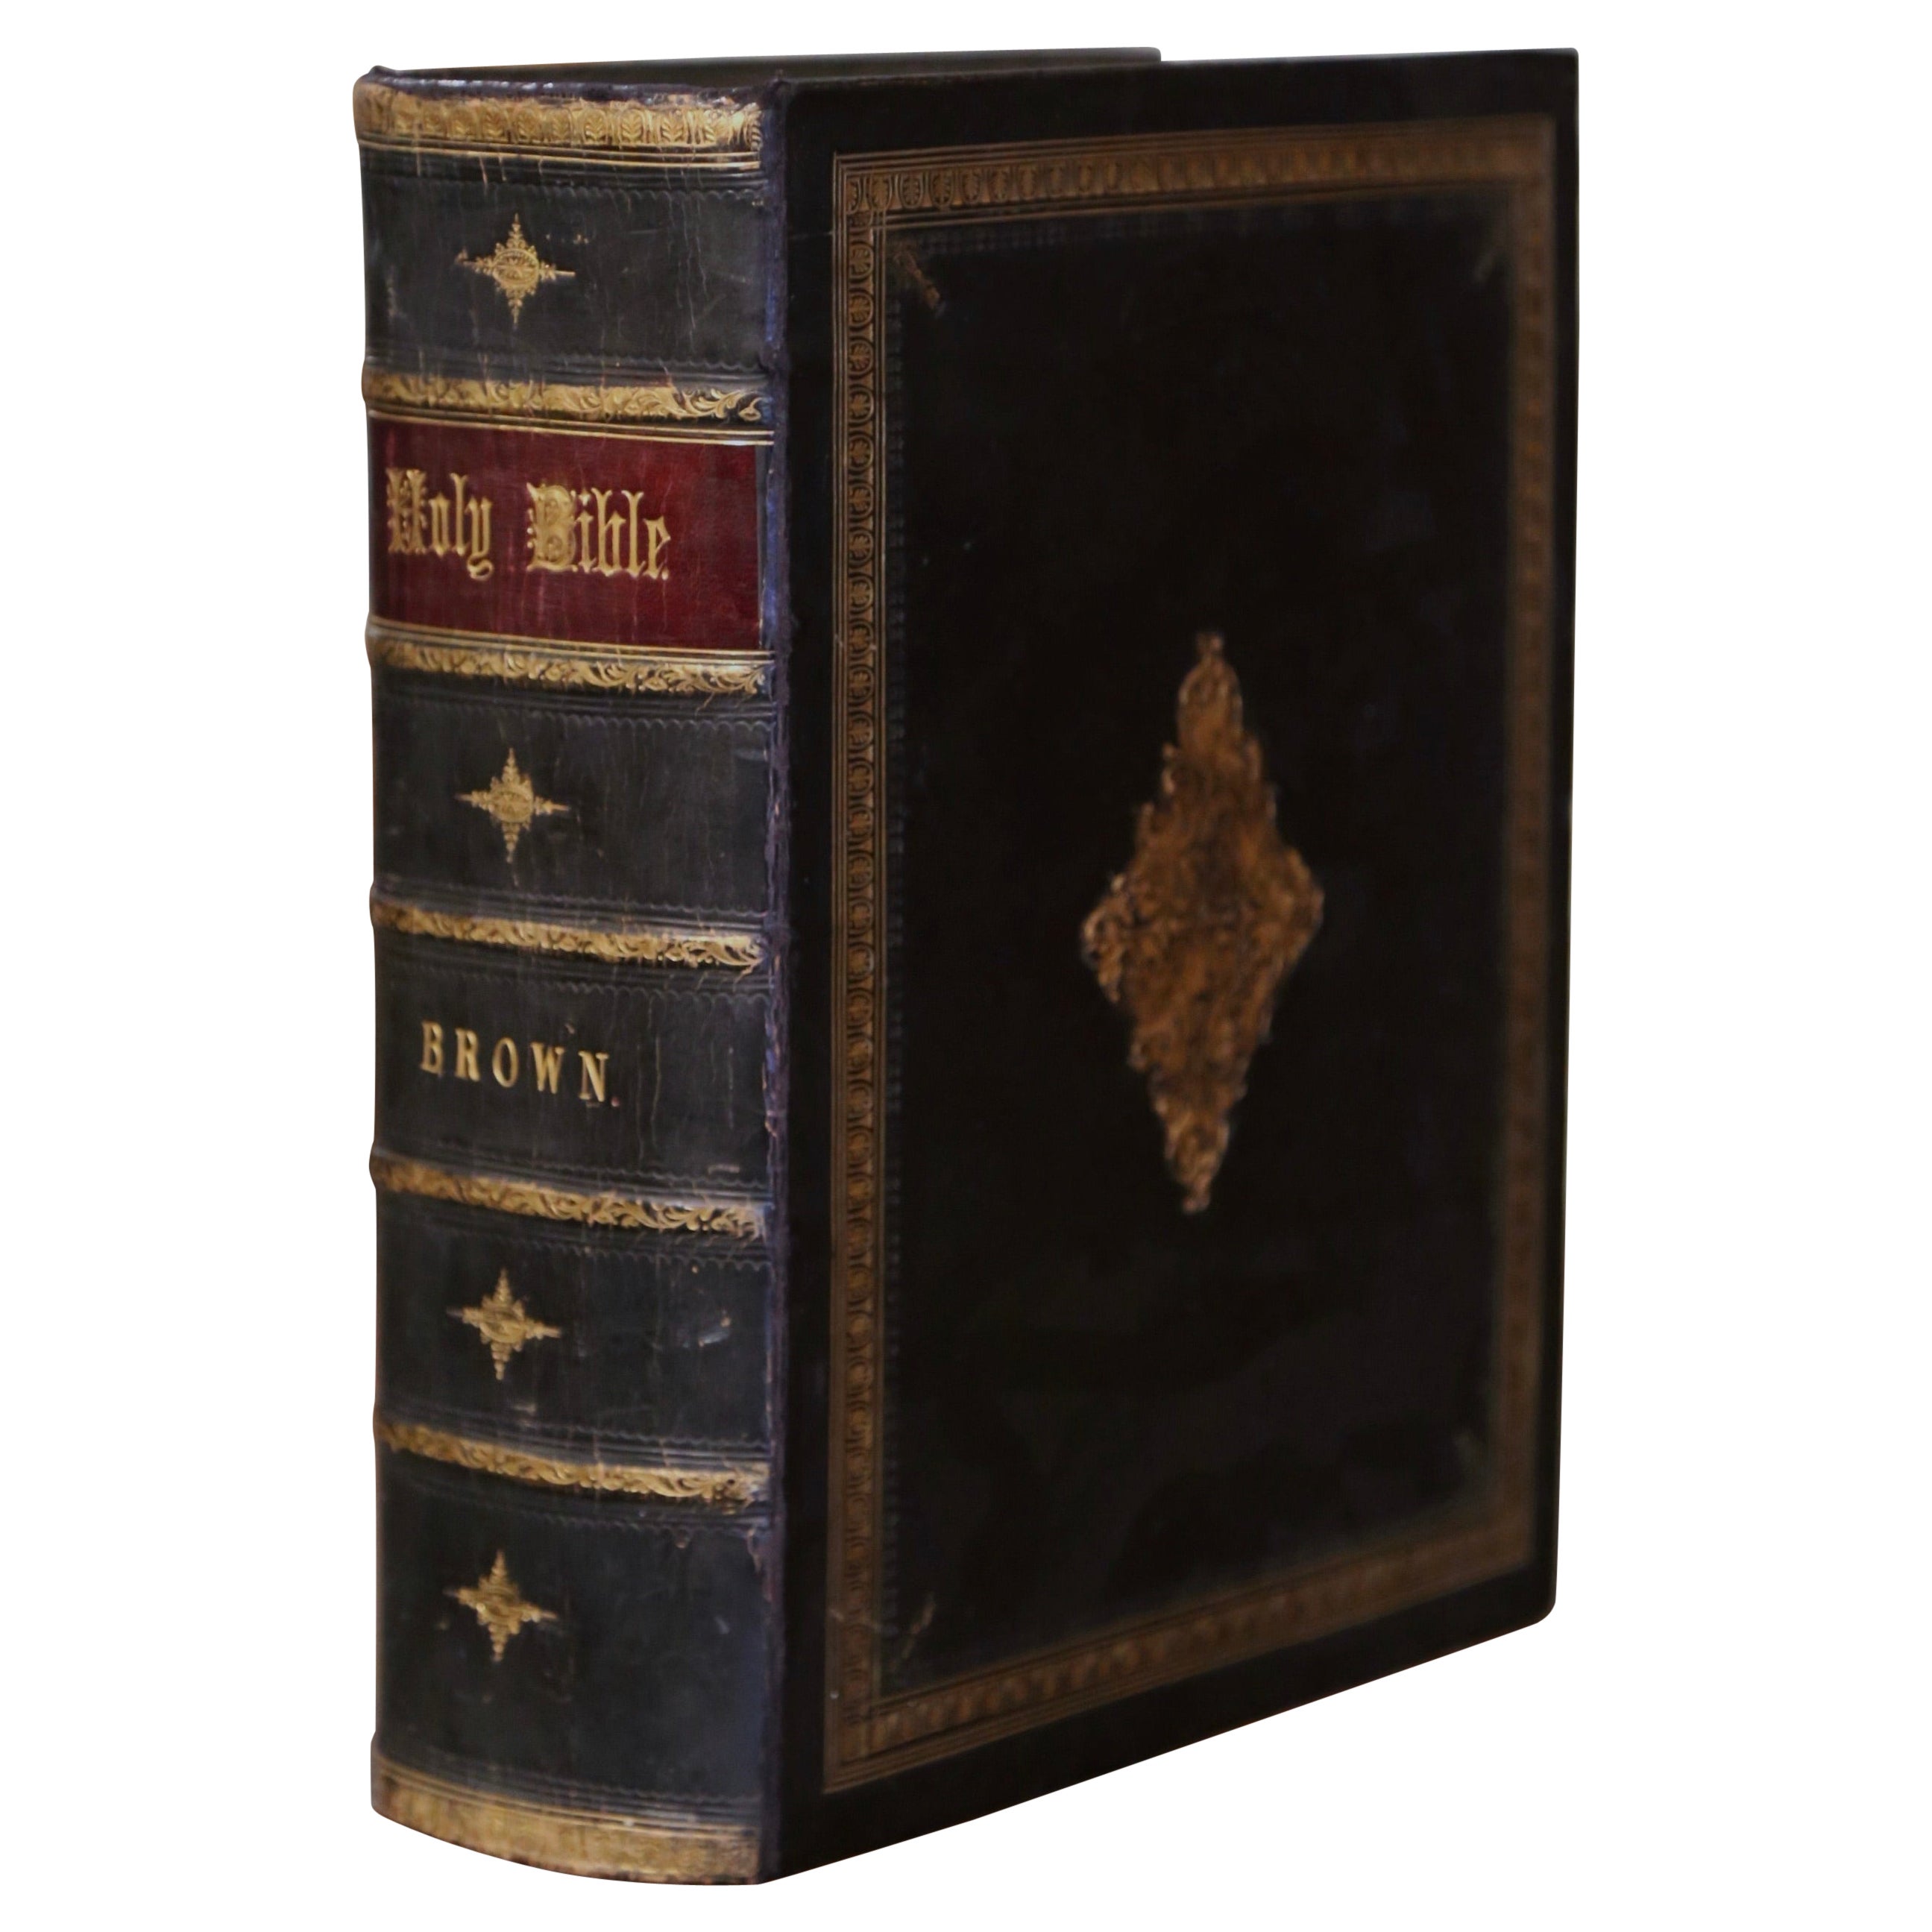 Holy Bible anglaise du 19ème siècle reliée et dorée par John Brown et datée de 1864